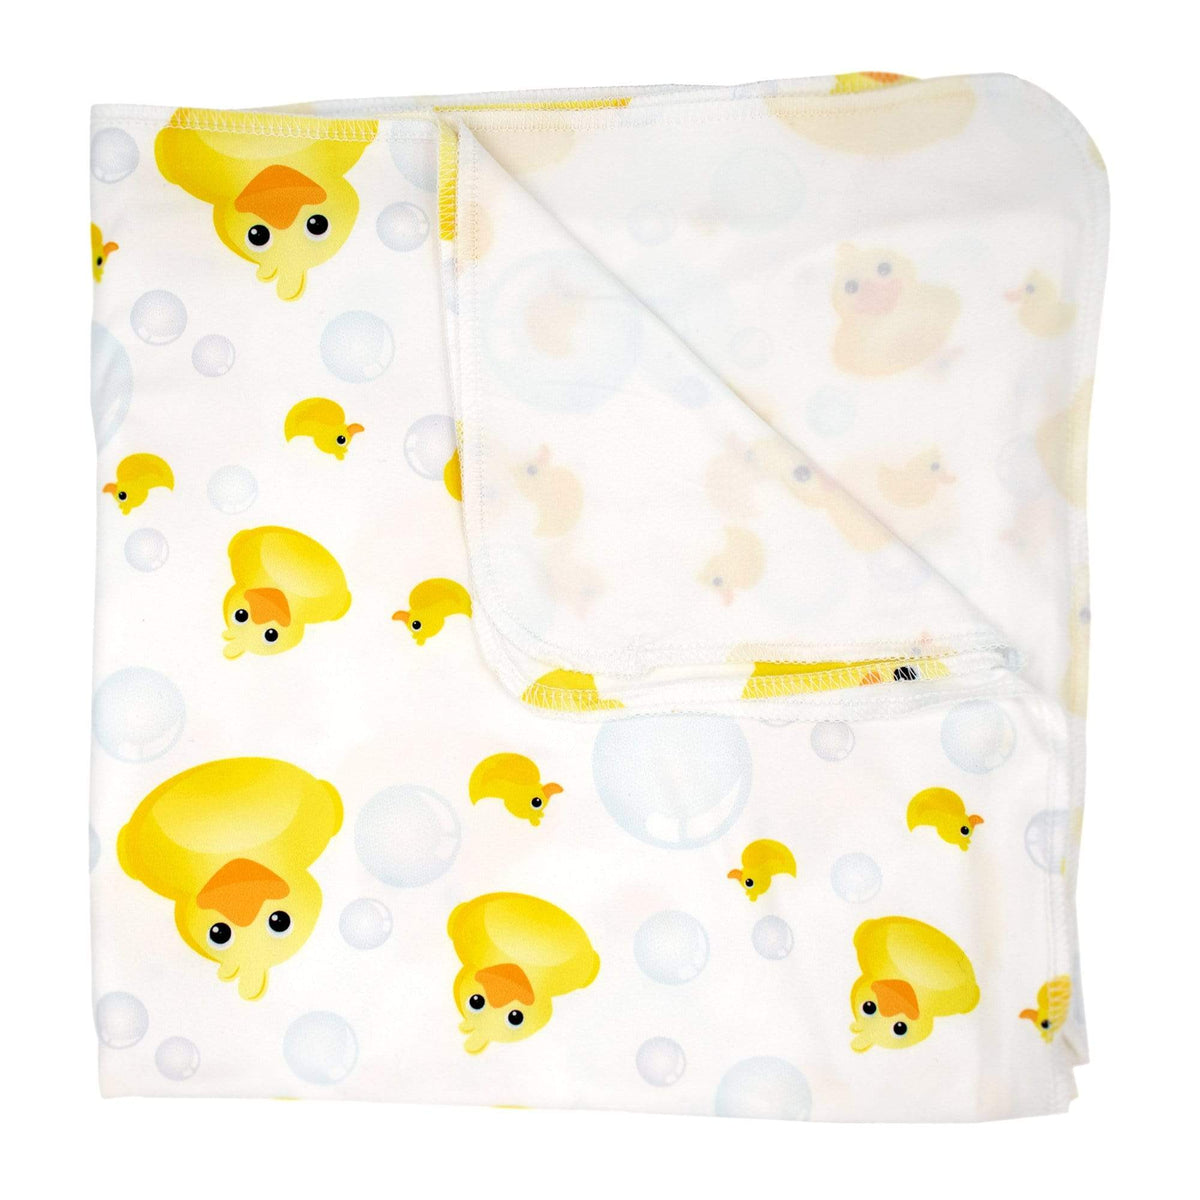 CLEARANCE: Imagine Baby Stretchy Swaddle Blanket Splish Splash